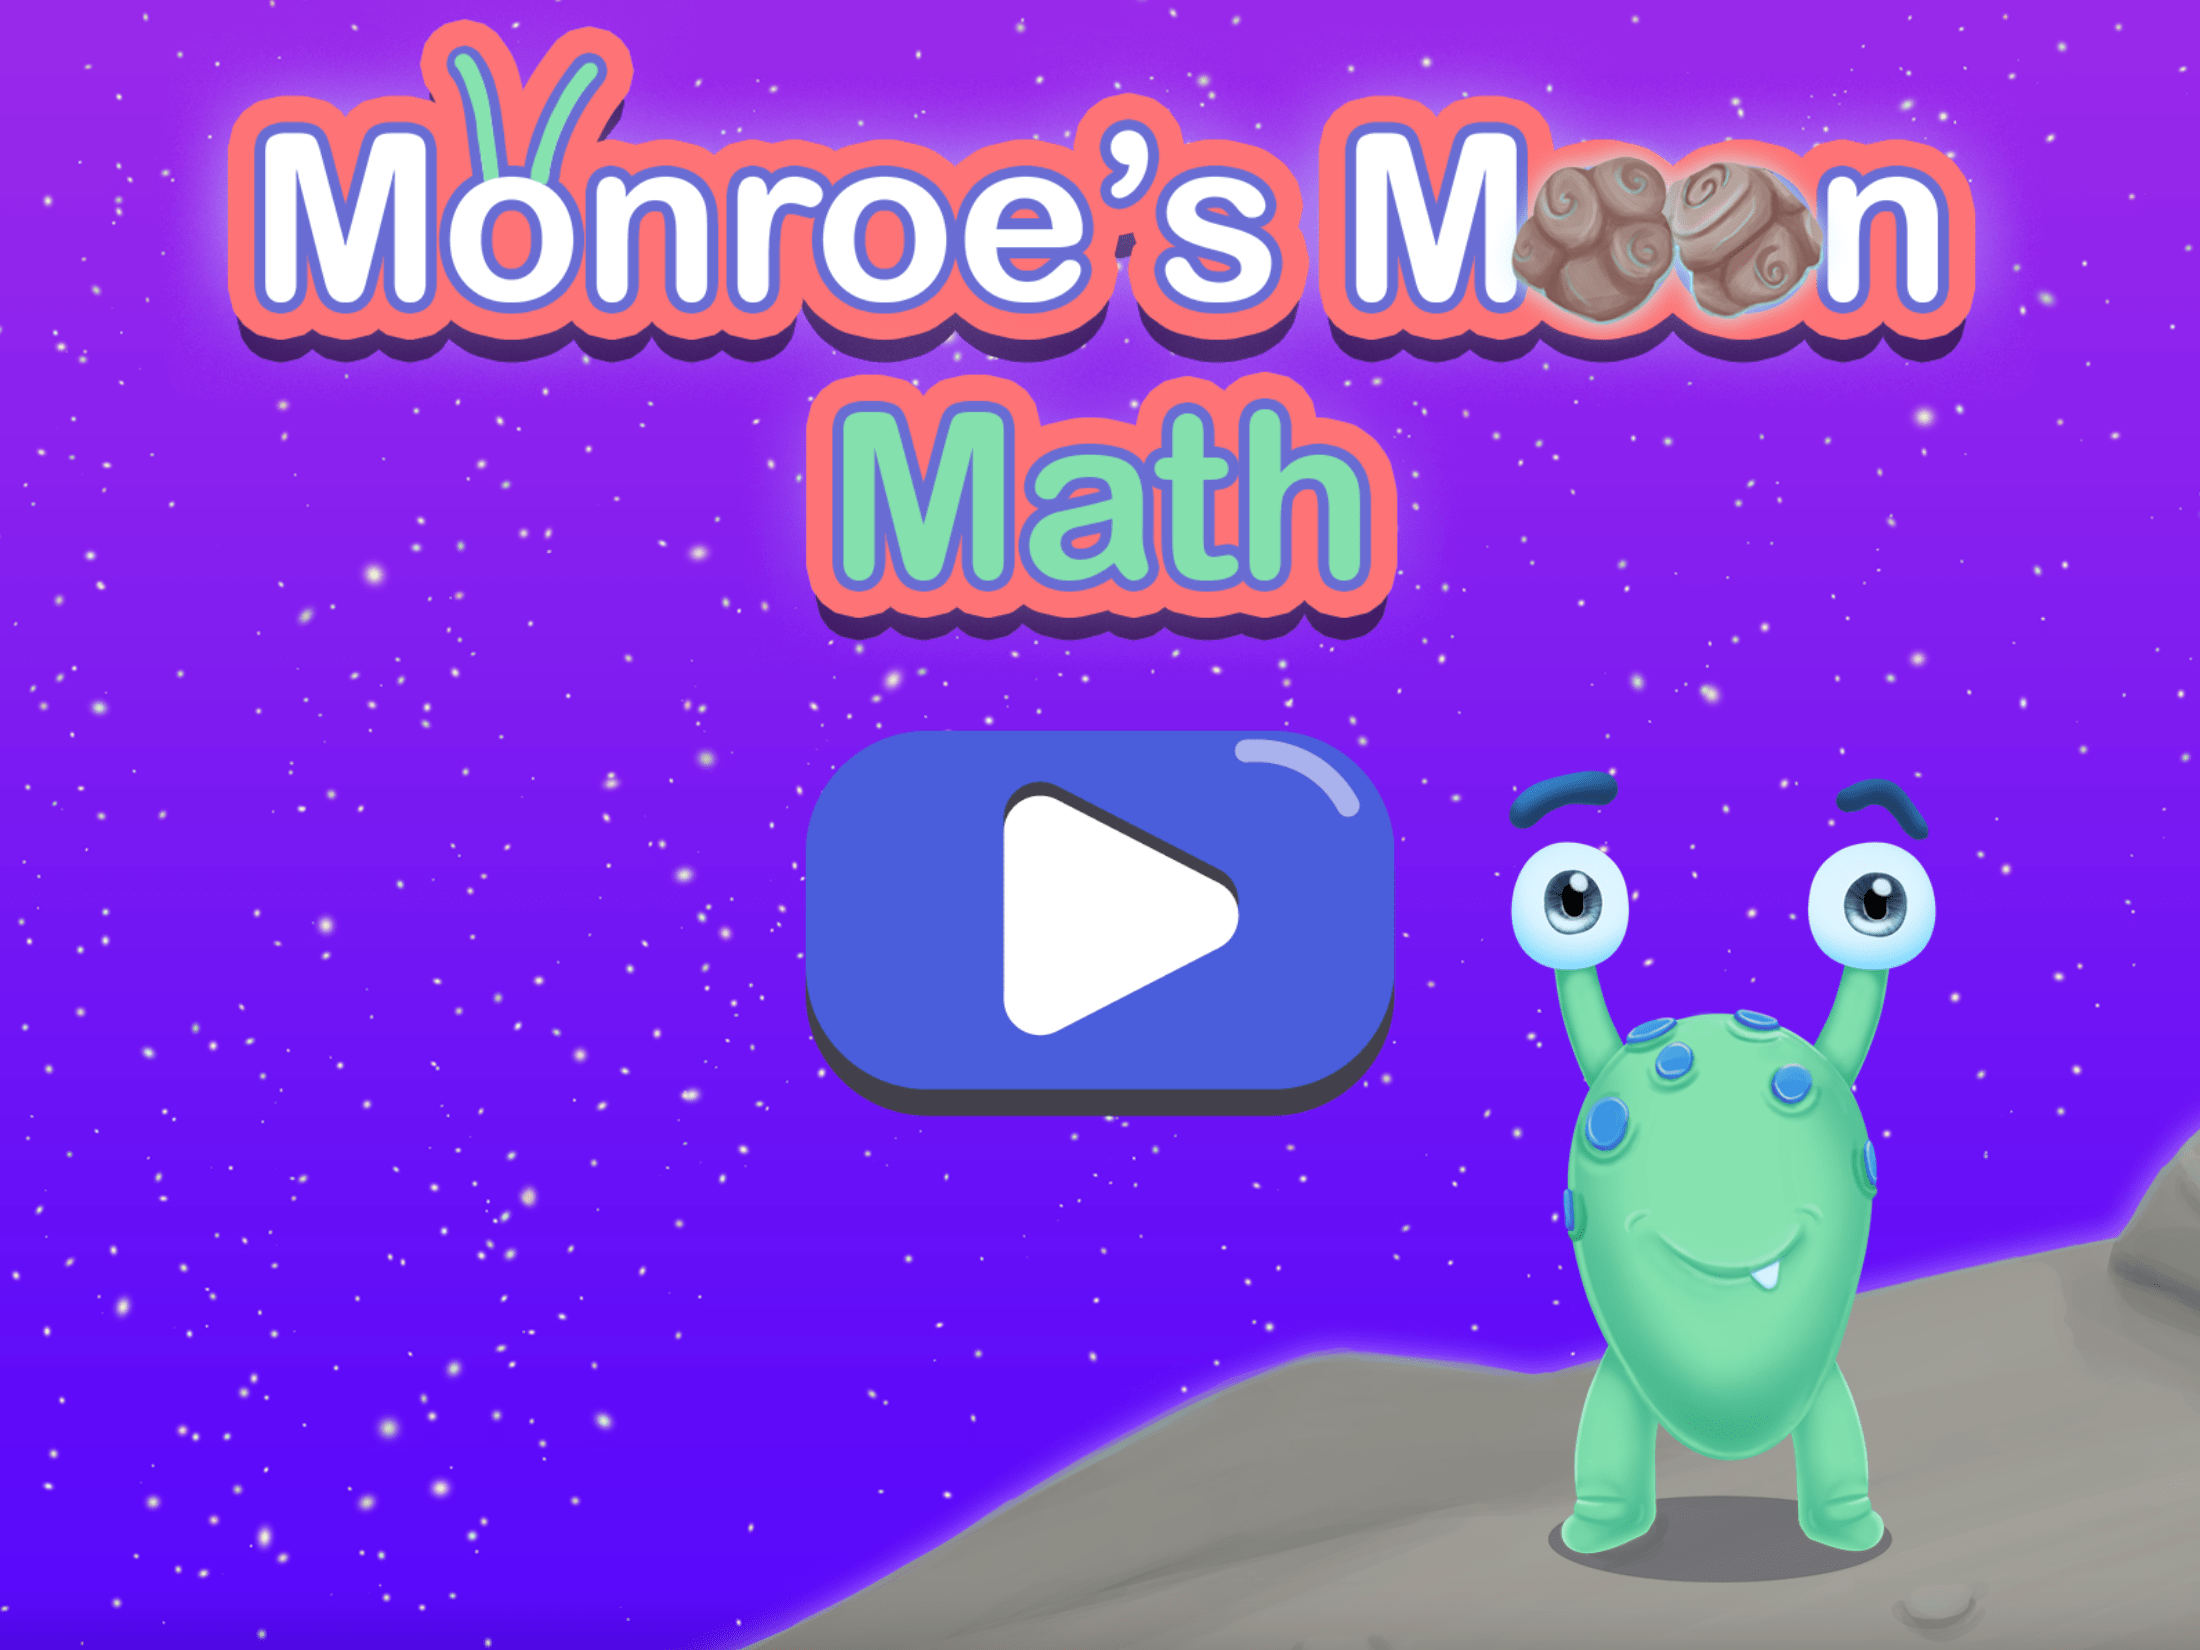 Monroes Moon Math game